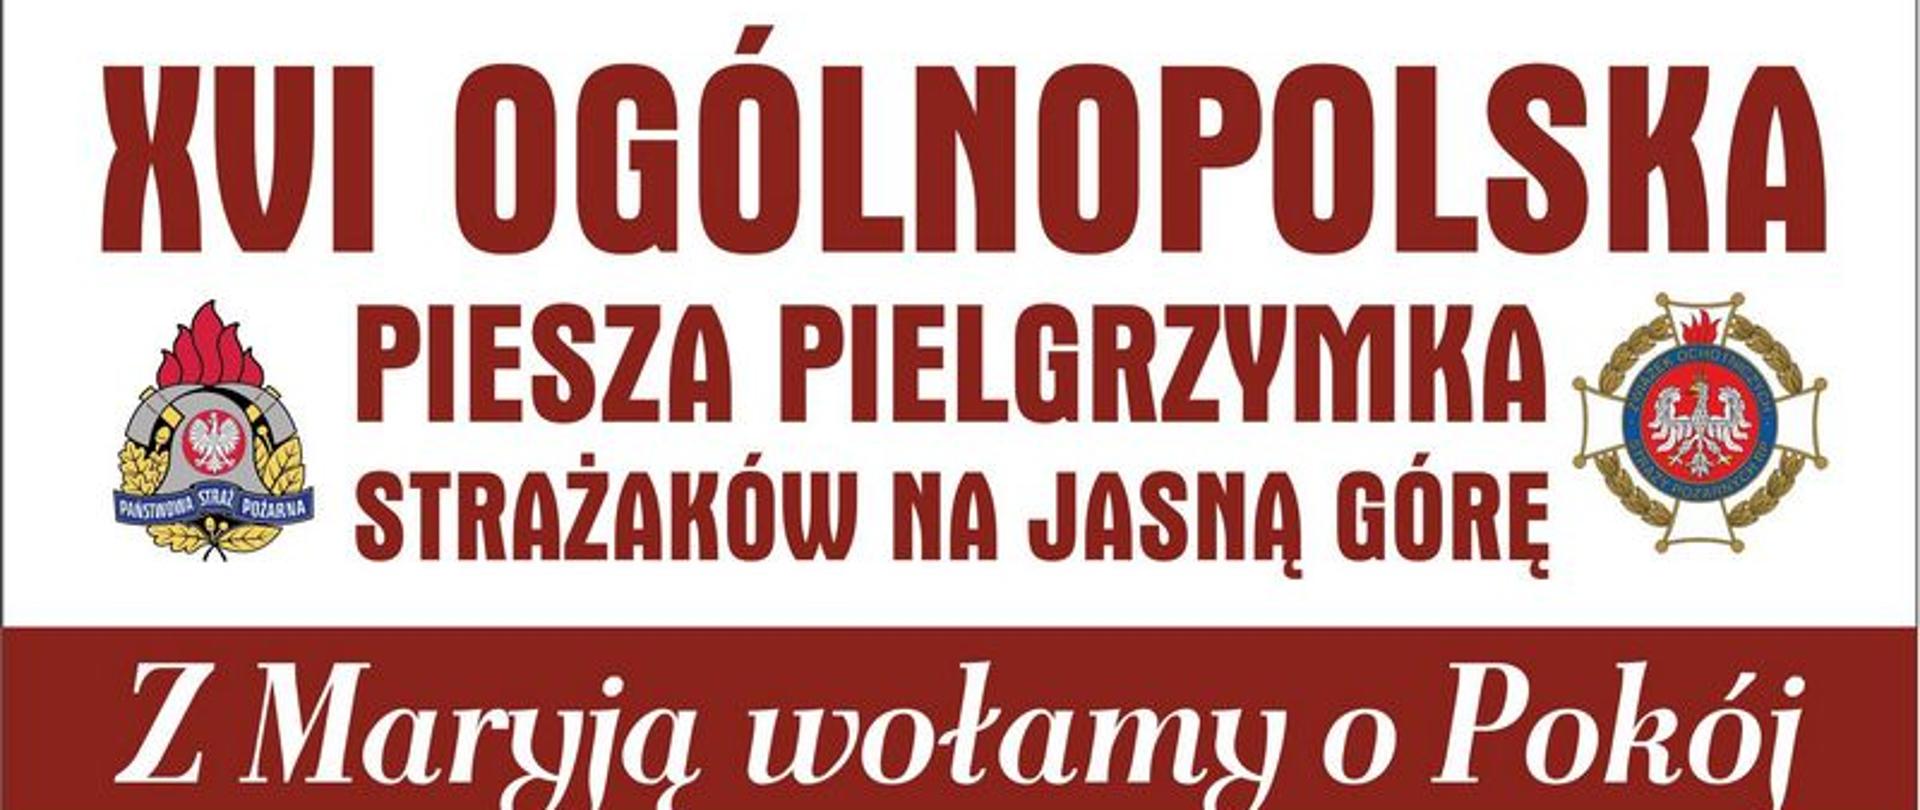 Zdjęcie przedstawia plakat Ogólnopolskiej Pieszej Pielgrzymki Strażaków na Jasną Górę